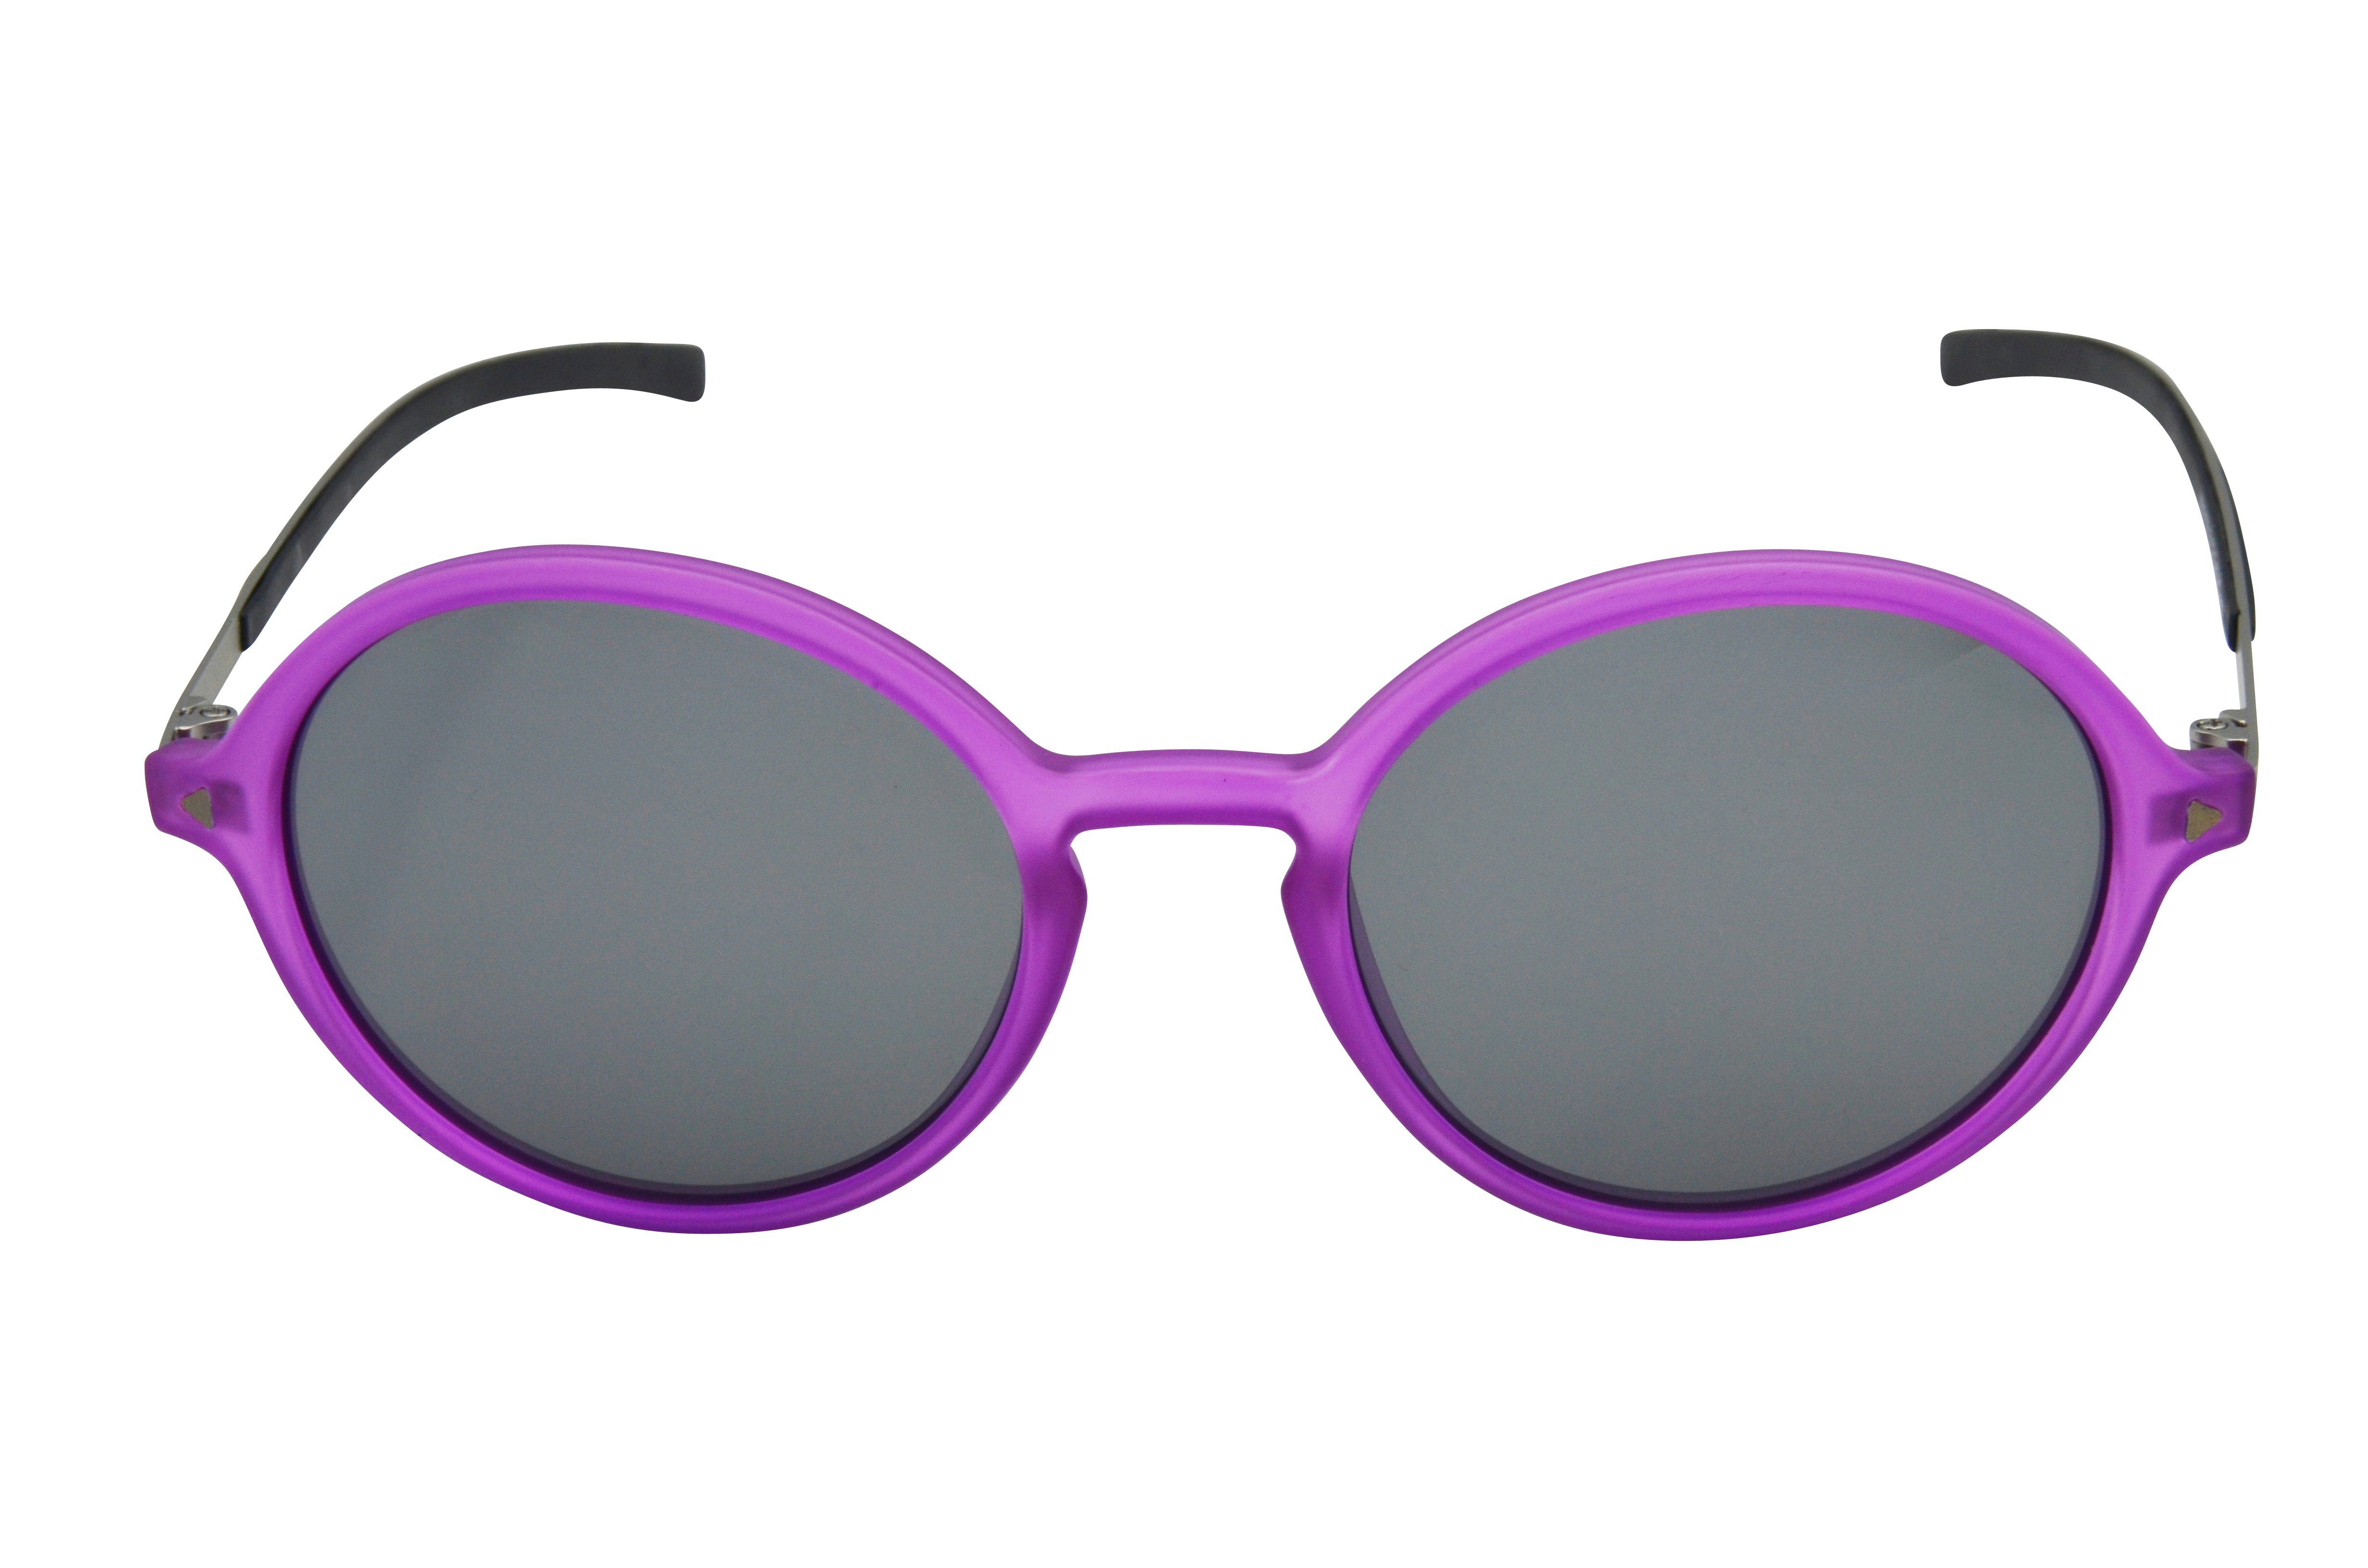 Brille Mode WM3128 weiß, GAMSSTYLE Gamswild blau, Damen, schwarz Sonnenbrille pink, Metallbügel